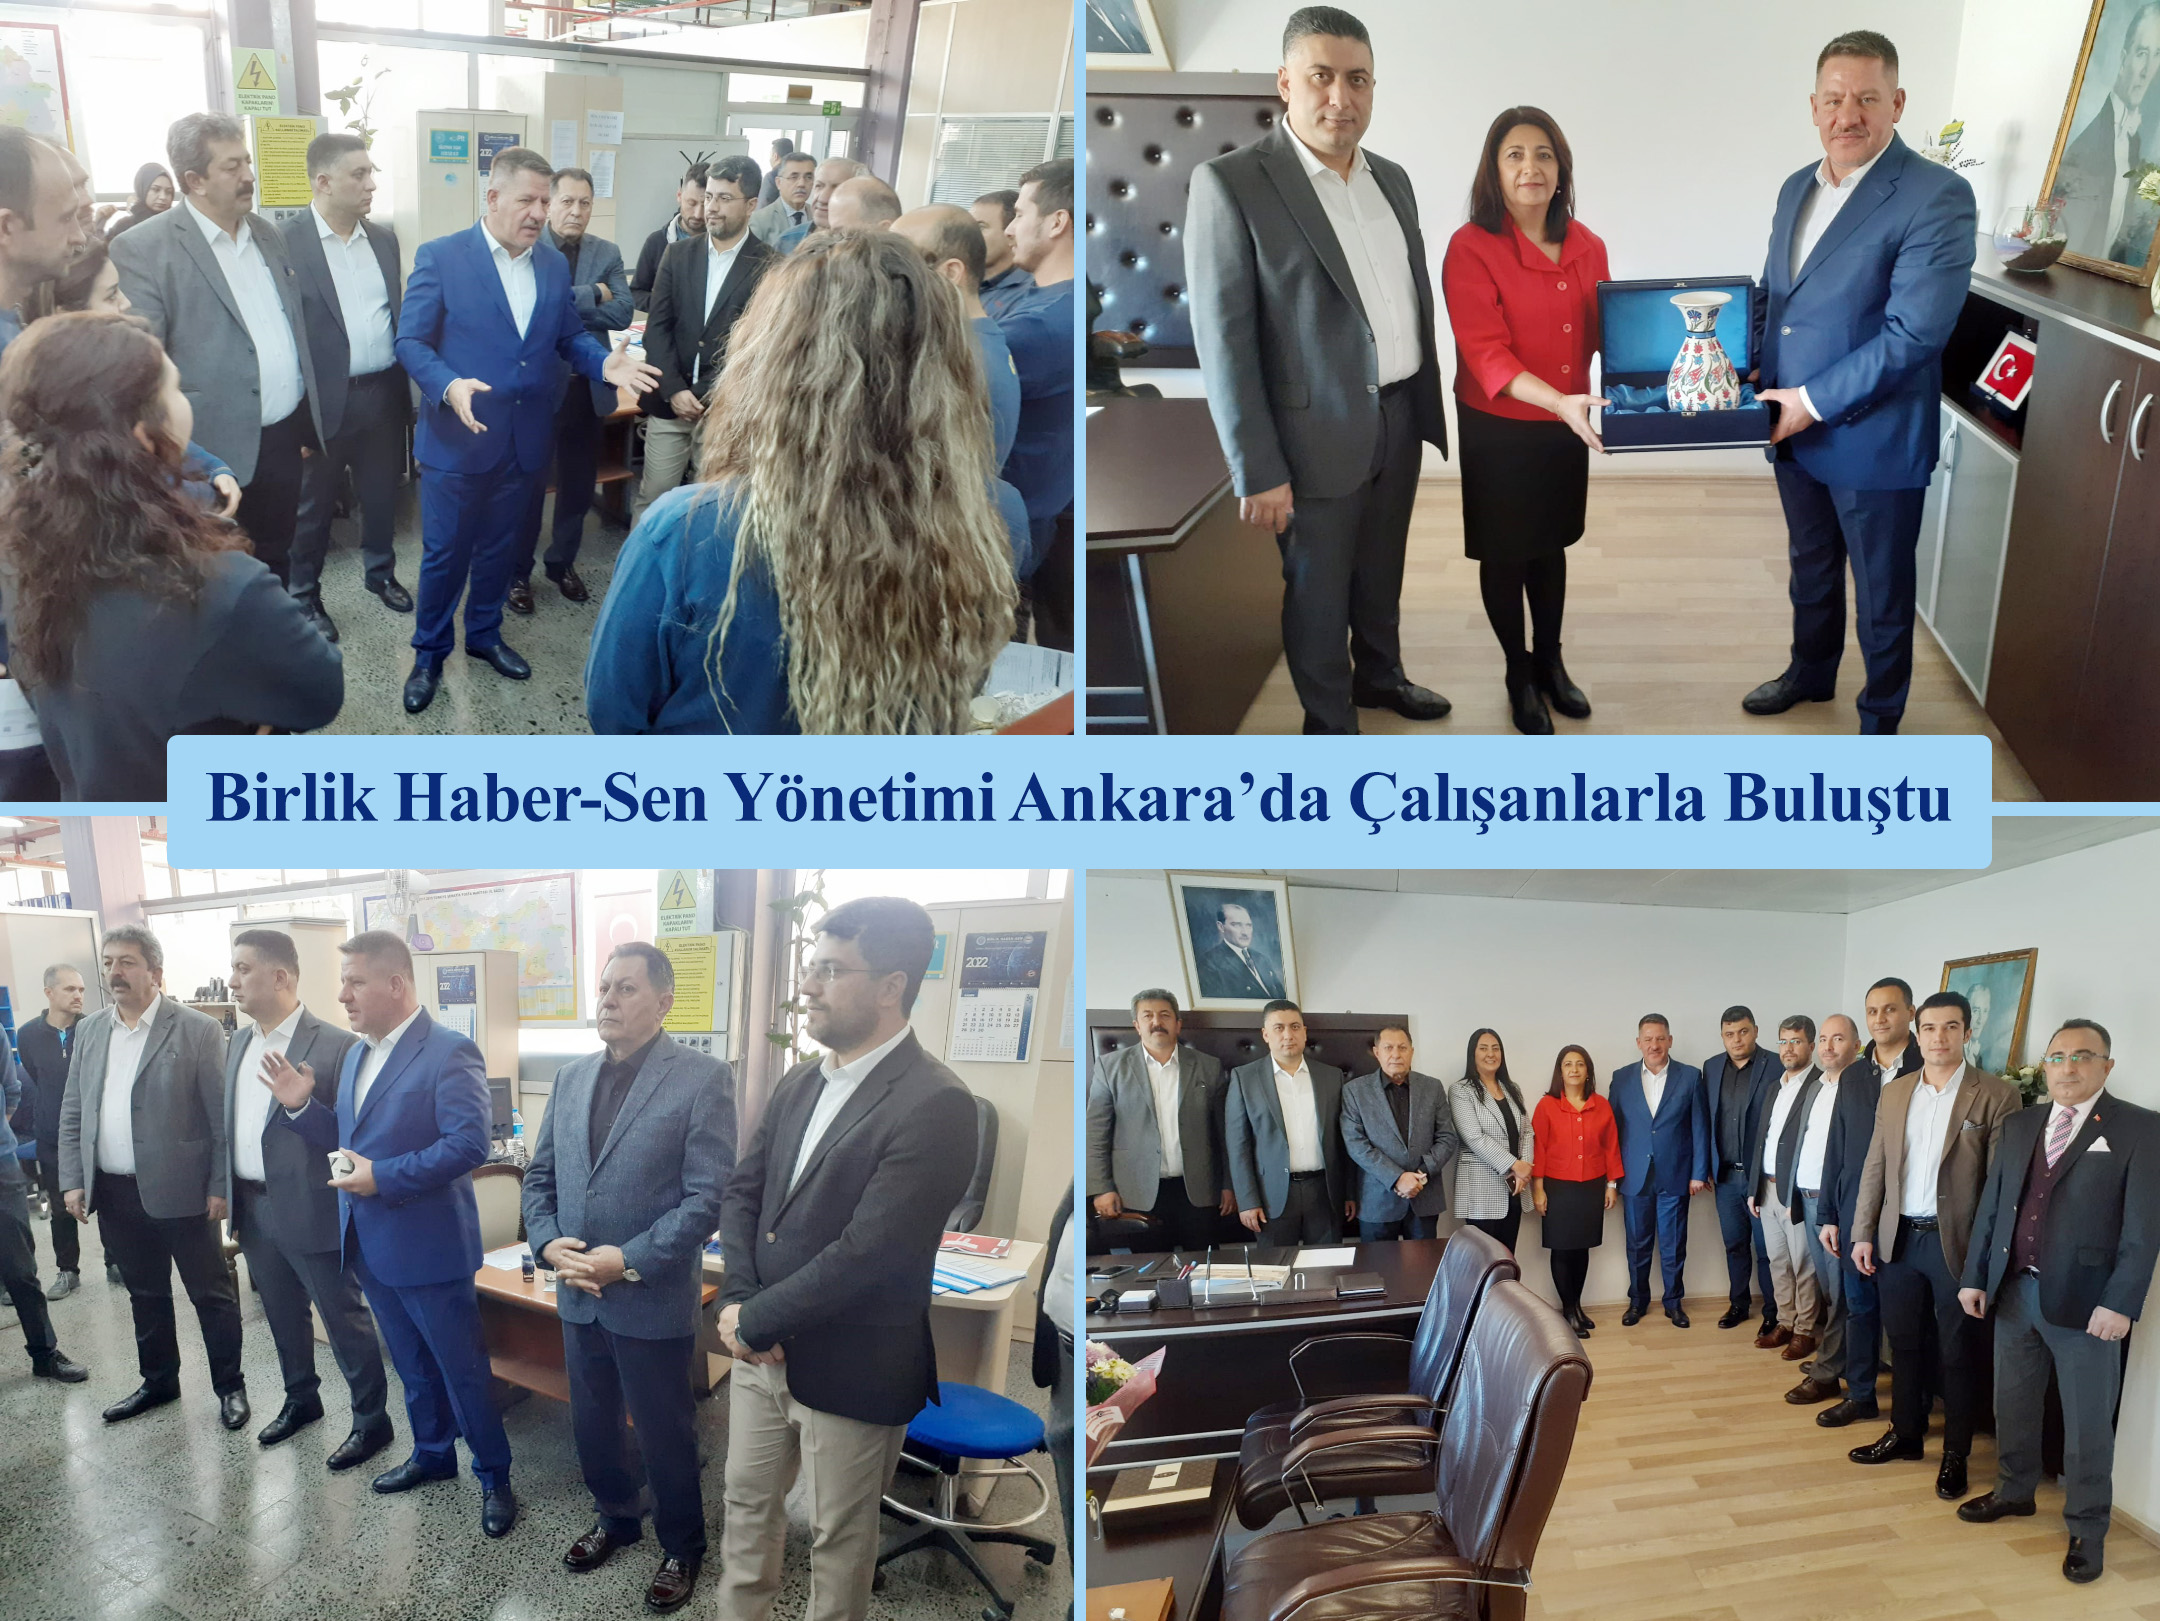 Birlik Haber-Sen Yönetimi Ankara’da Çalışanlarla Buluştu